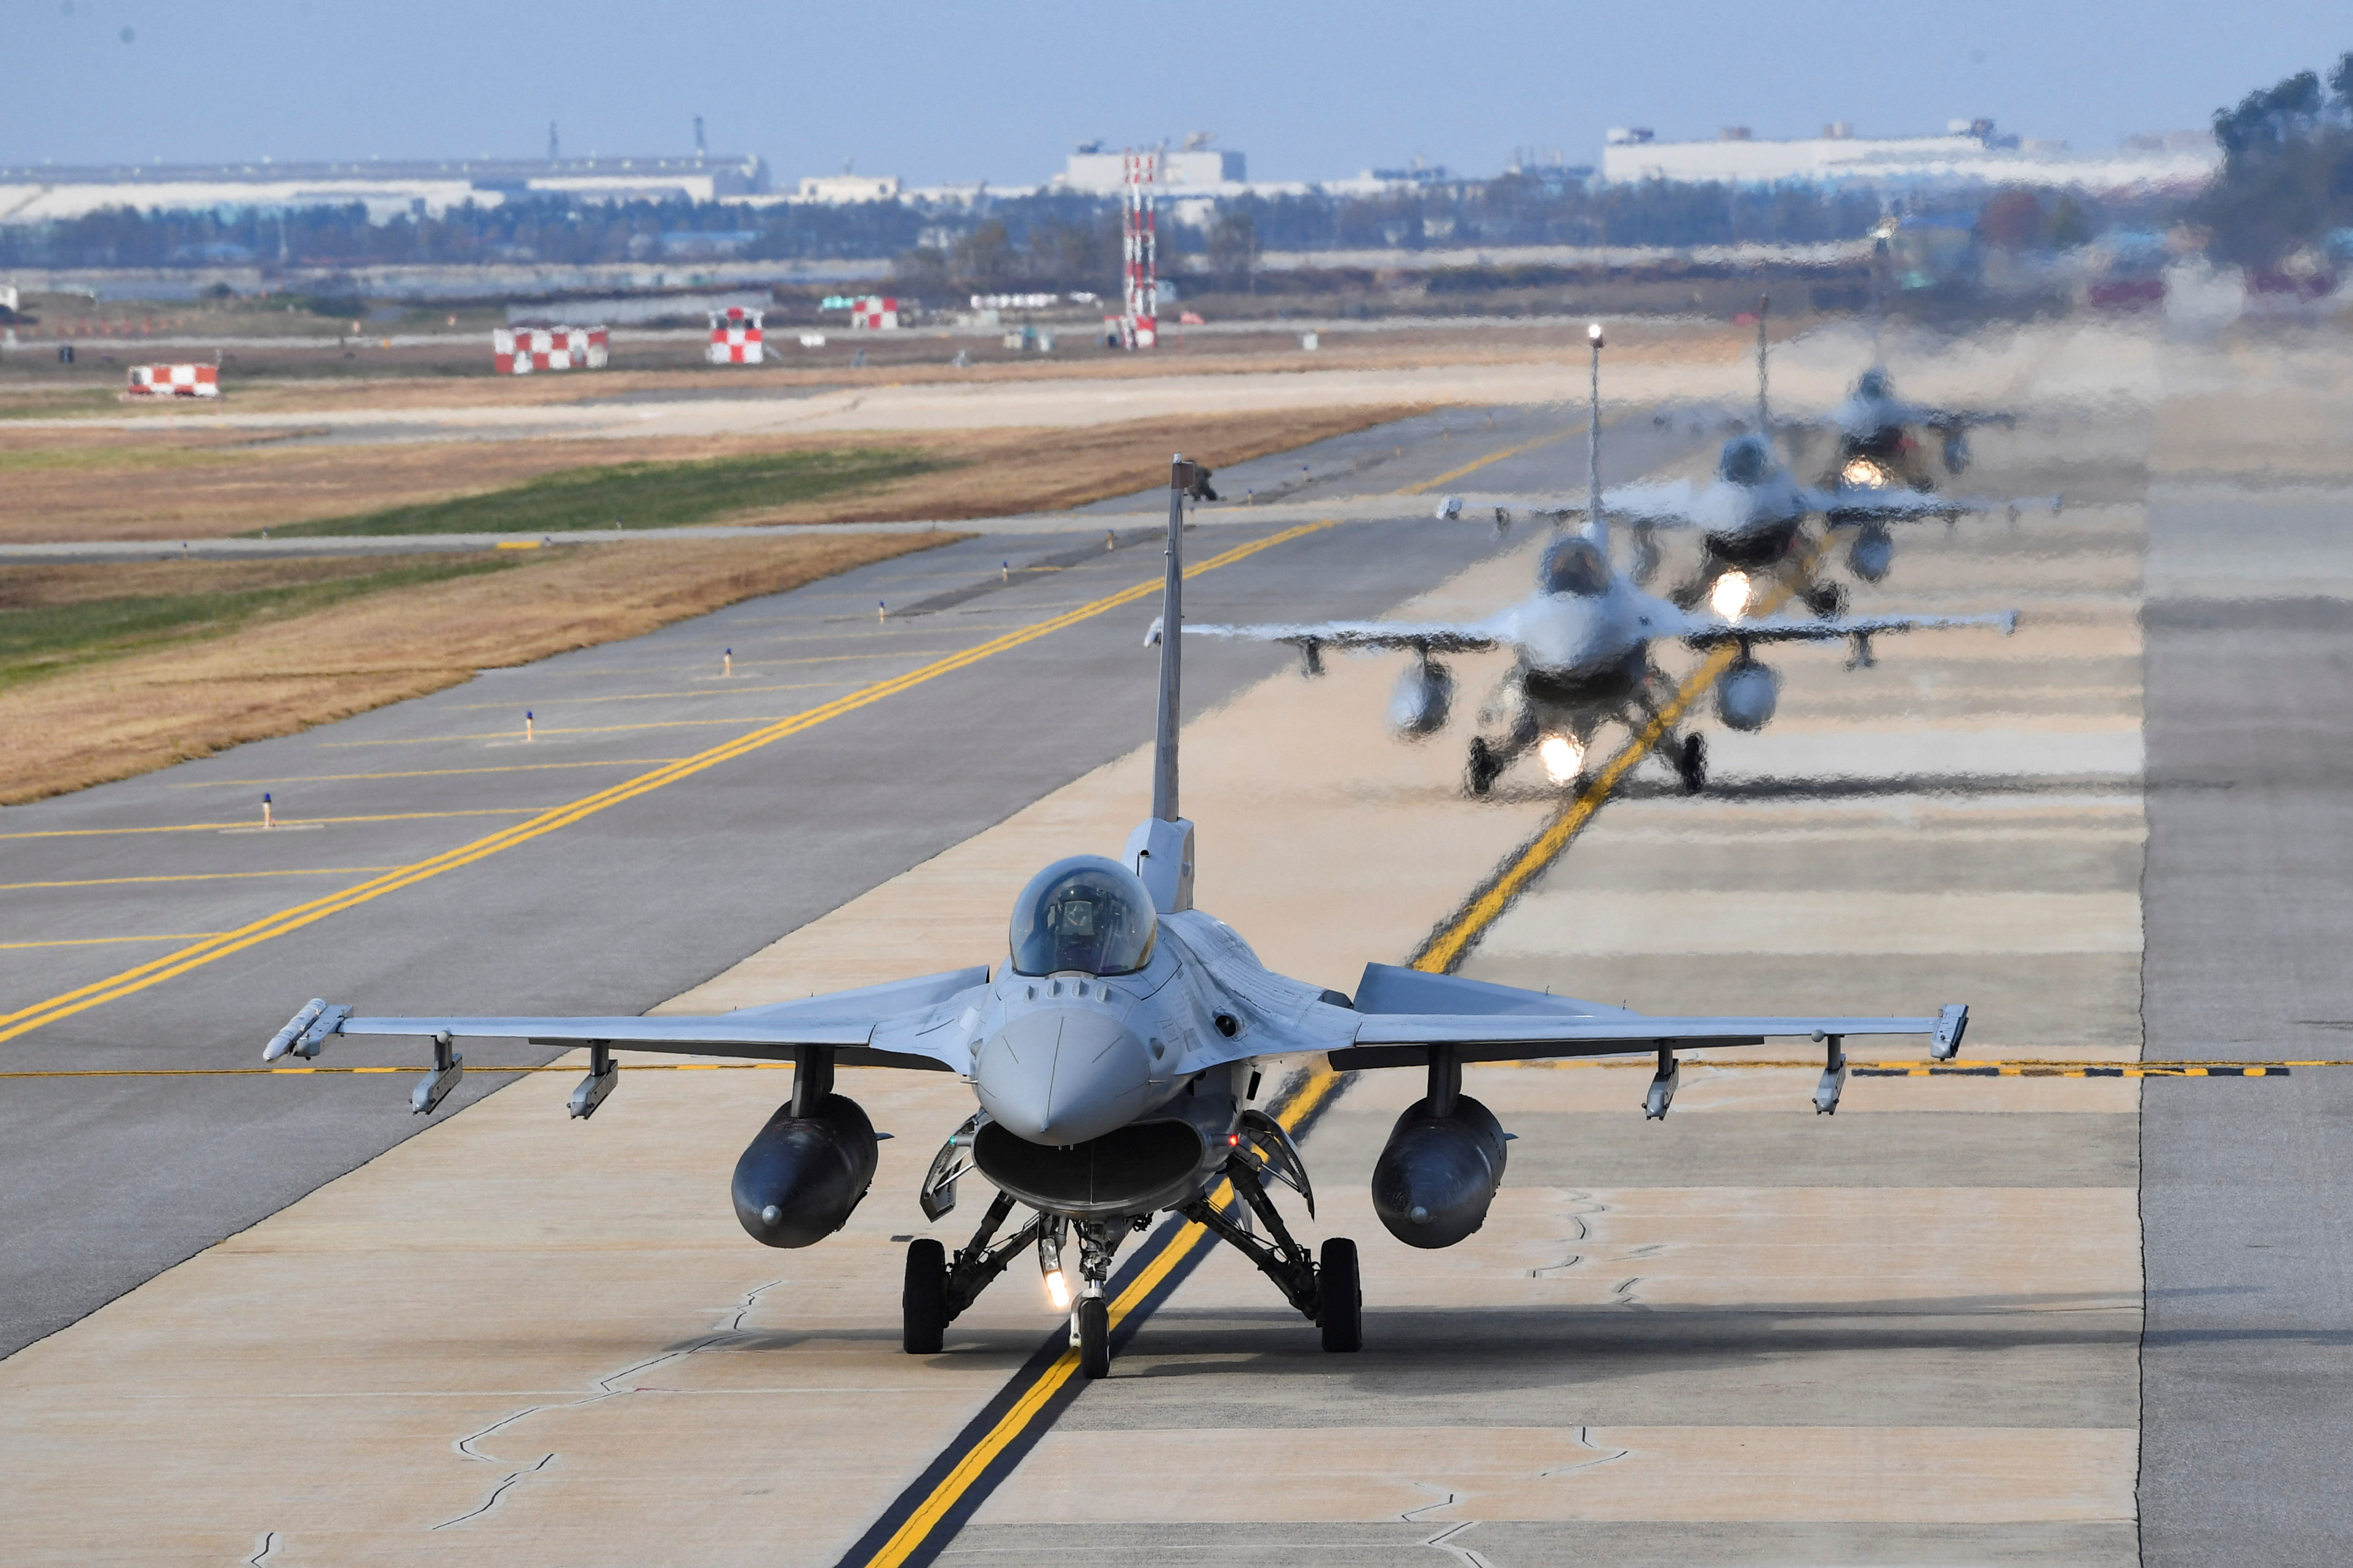 Aviones de combate KF-16 de la Fuerza Aérea de Corea del Sur participan en ejercicios aéreos conjuntos de Vigilant Storm de Corea del Sur y EE. UU. en una base aérea en Gunsan, Corea del Sur, el 1 de noviembre de 2022. (Yonhap vía REUTERS)